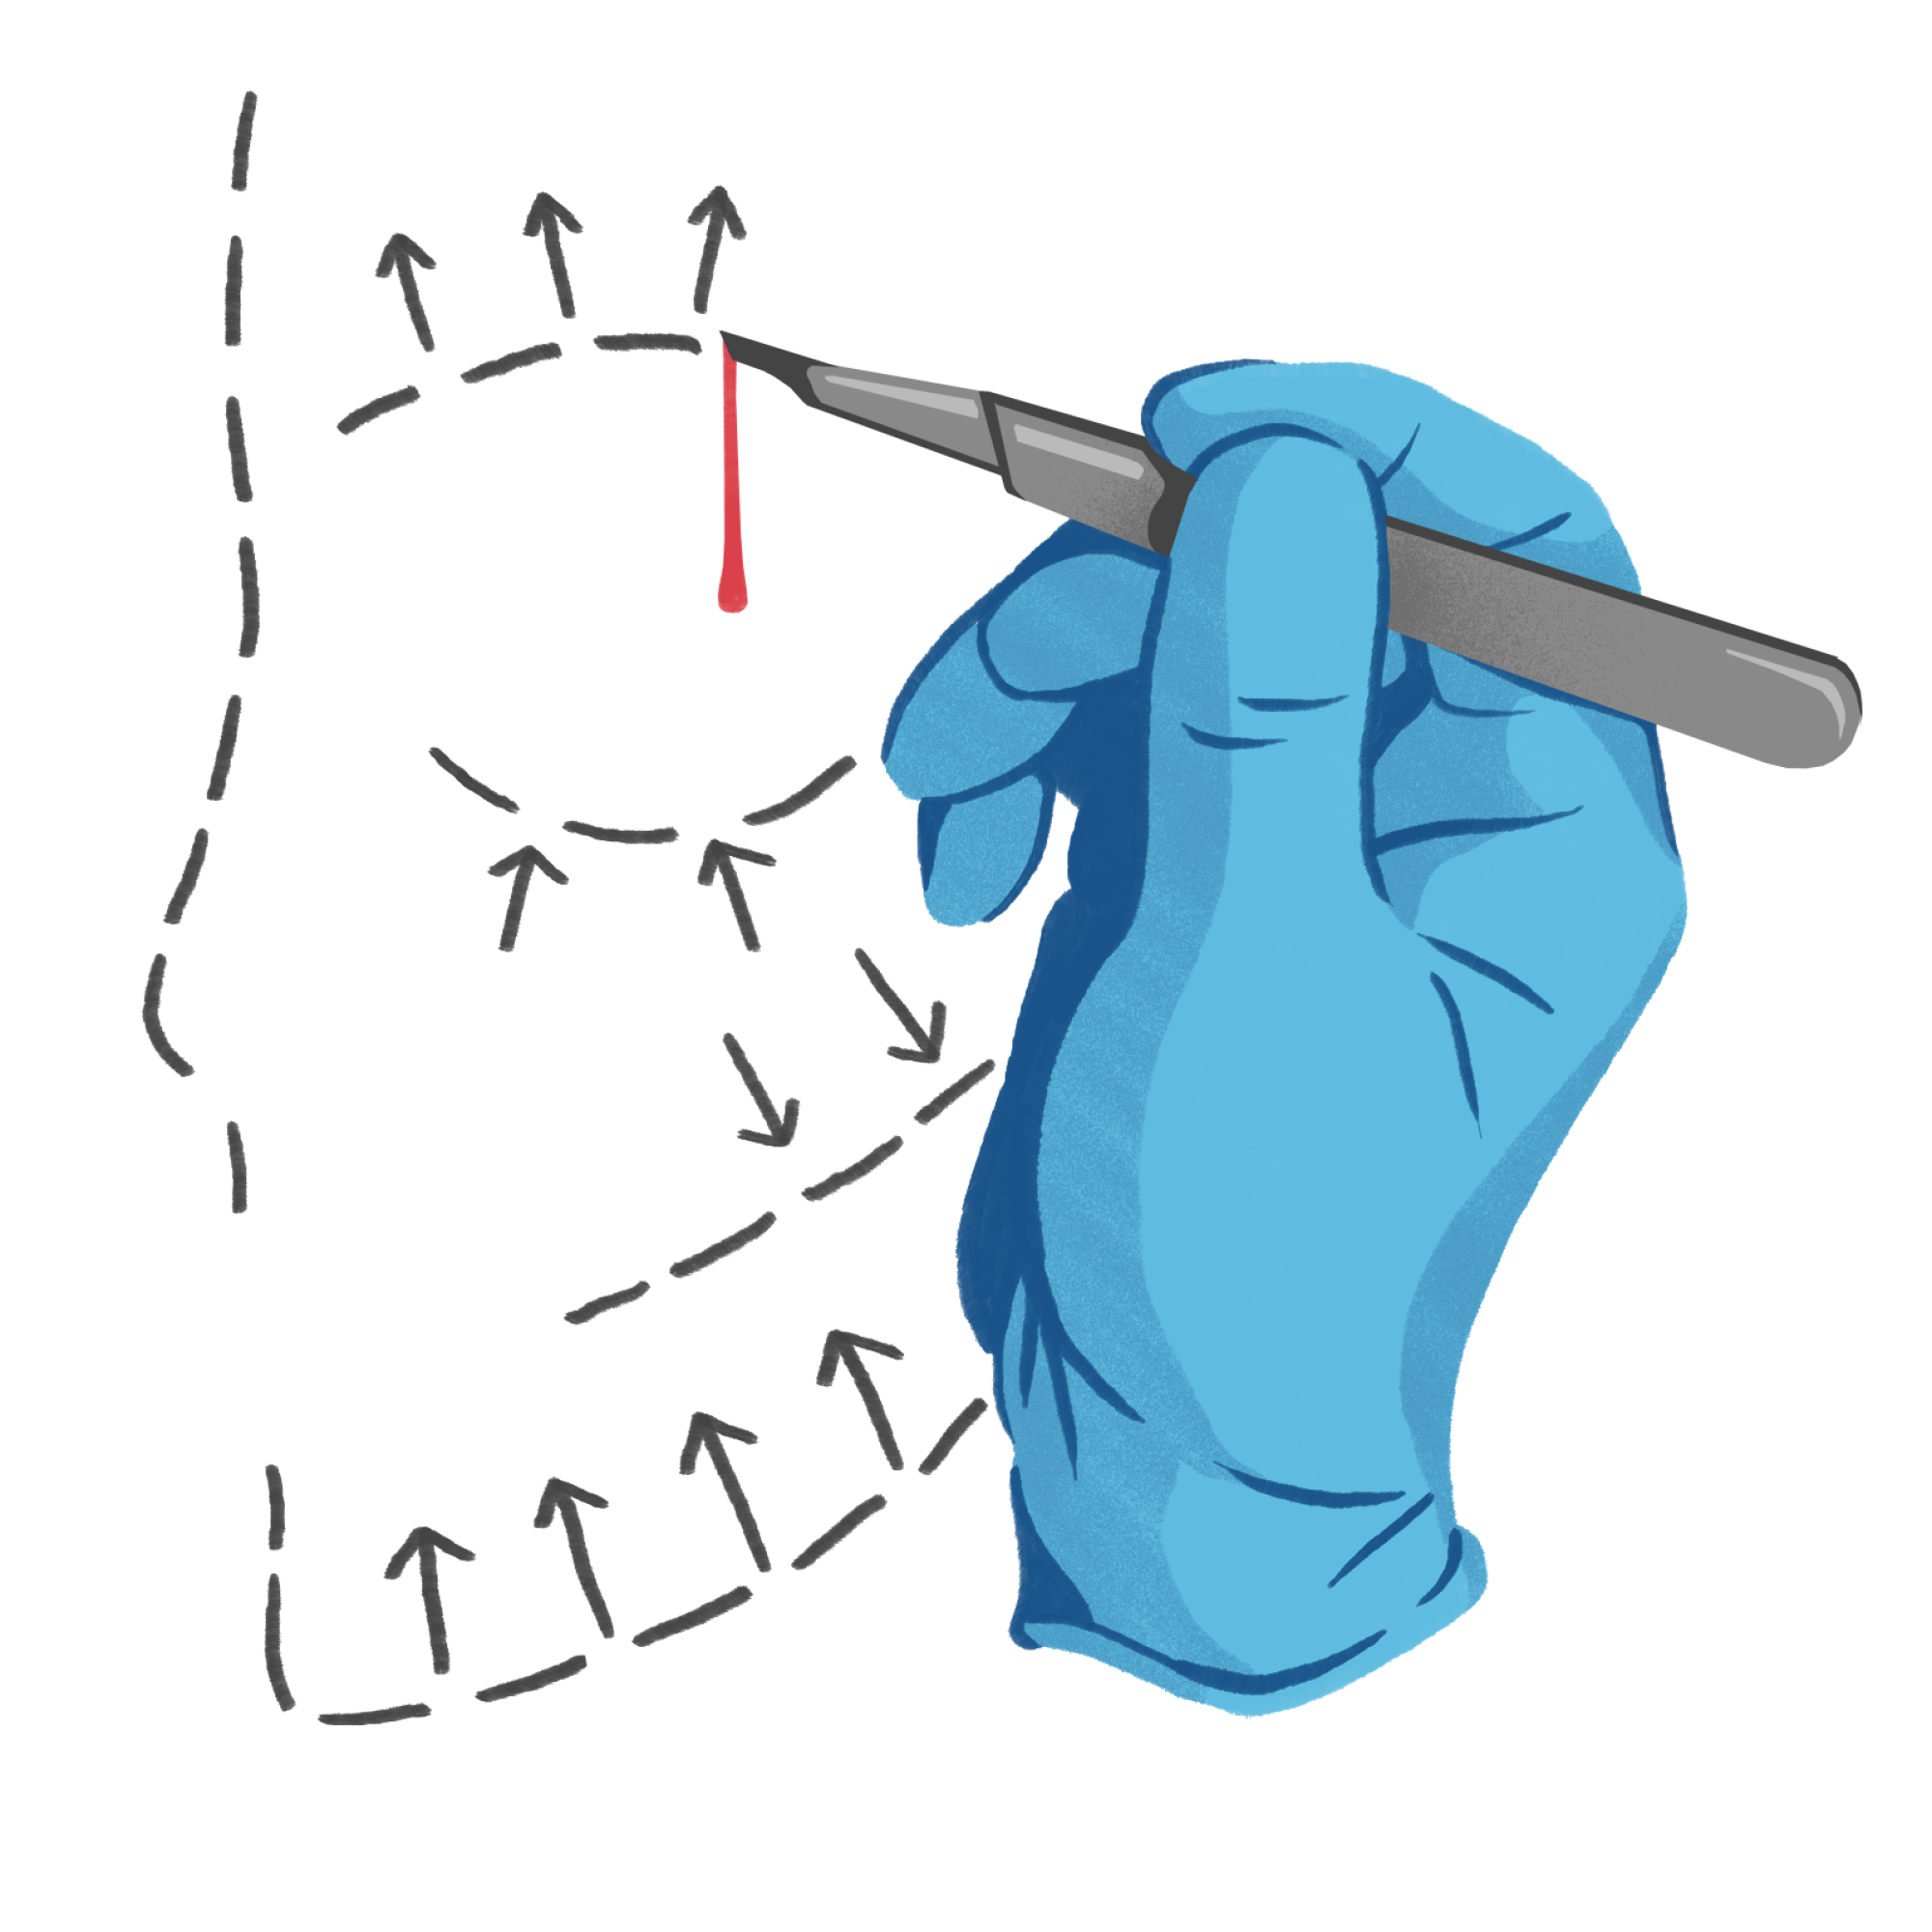 L'illustration conceptuelle montre le scalpel du chirurgien et les lignes pointillées